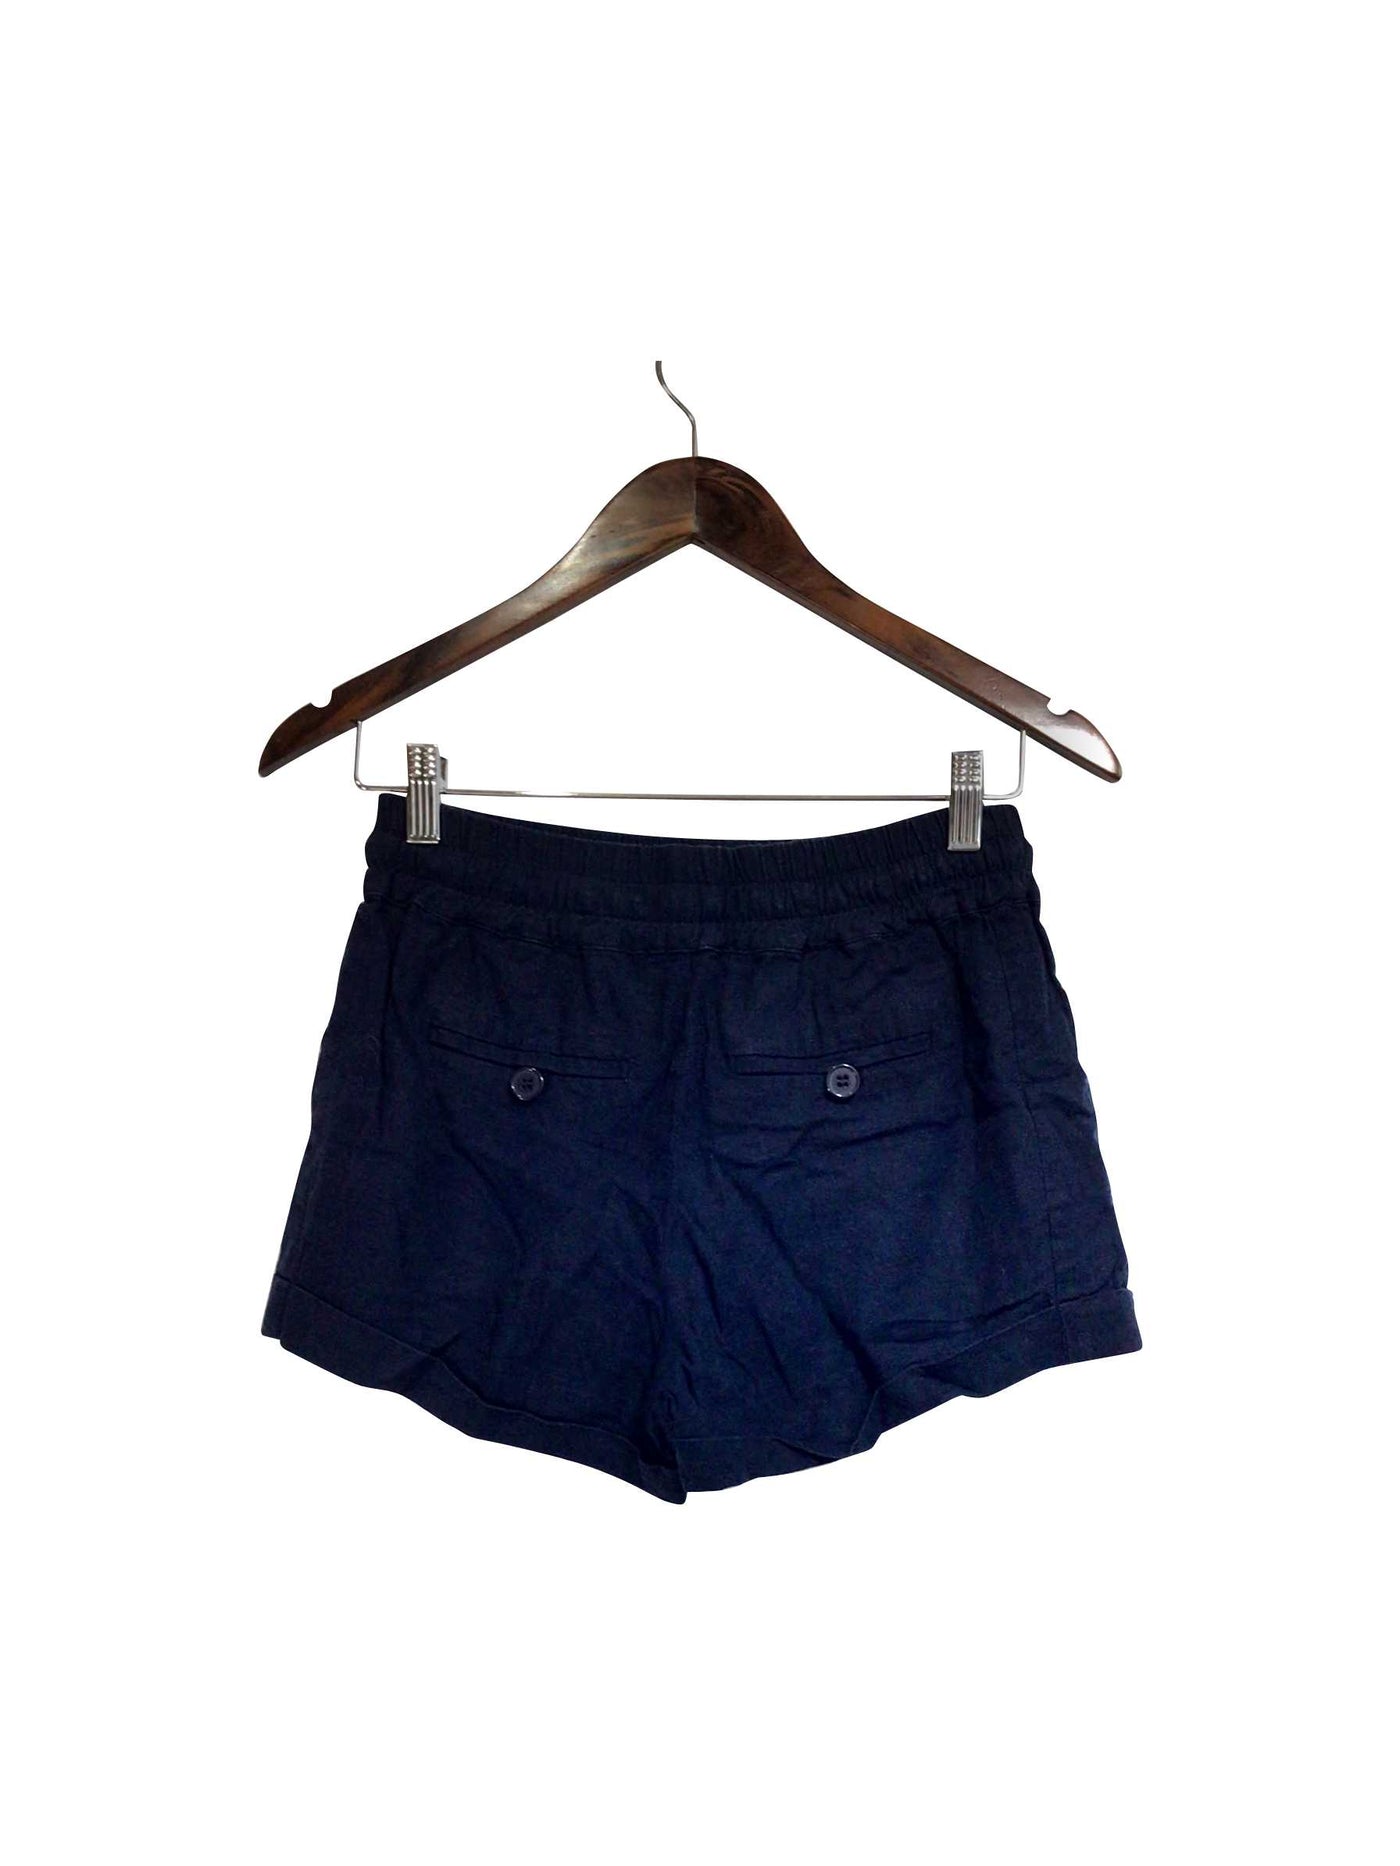 FOREVER 21 Regular fit Pant Shorts in Blue  -  S  8.79 Koop